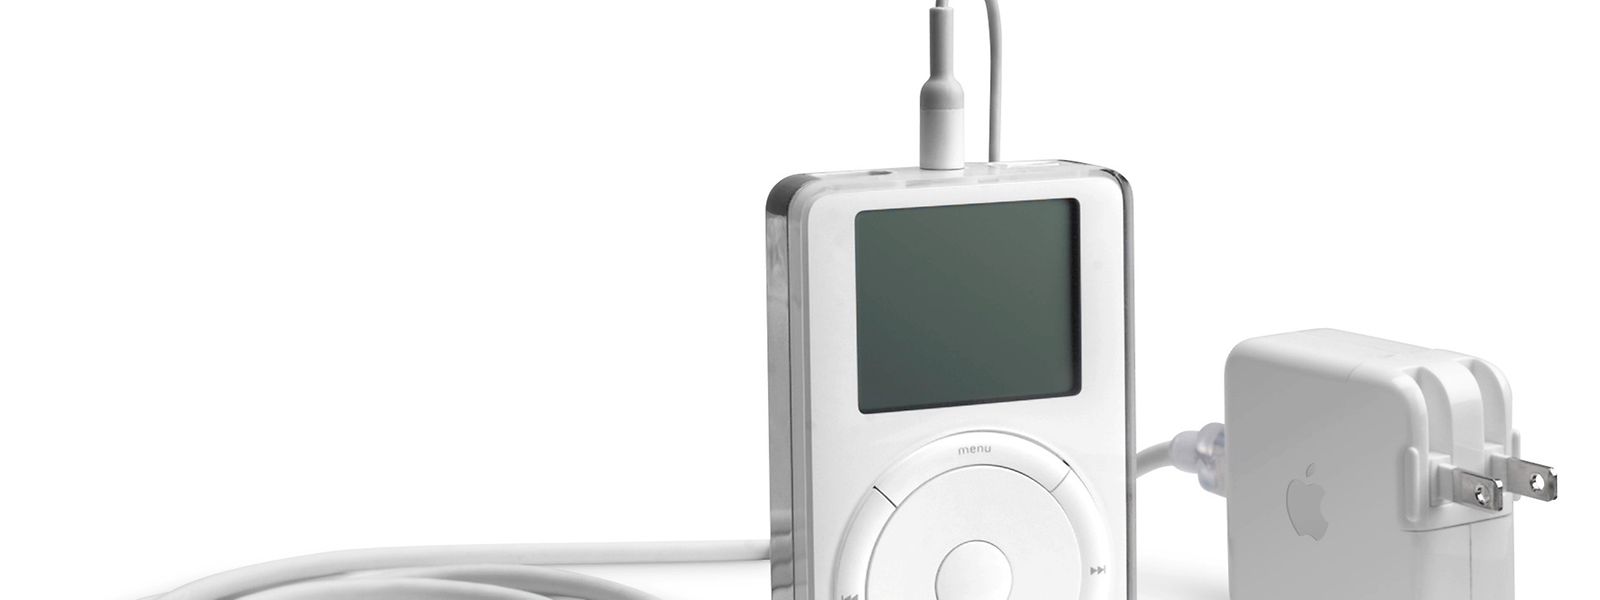 Der erste iPod, den der damalige Apple-Chef Steve Jobs am 23. Oktober 2001 vorgestellt hat, enthielt eine 5-Gigabyte-Festplatte und konnte dank MP3-Komprimierung rund 1.000 Musikstücke speichern.